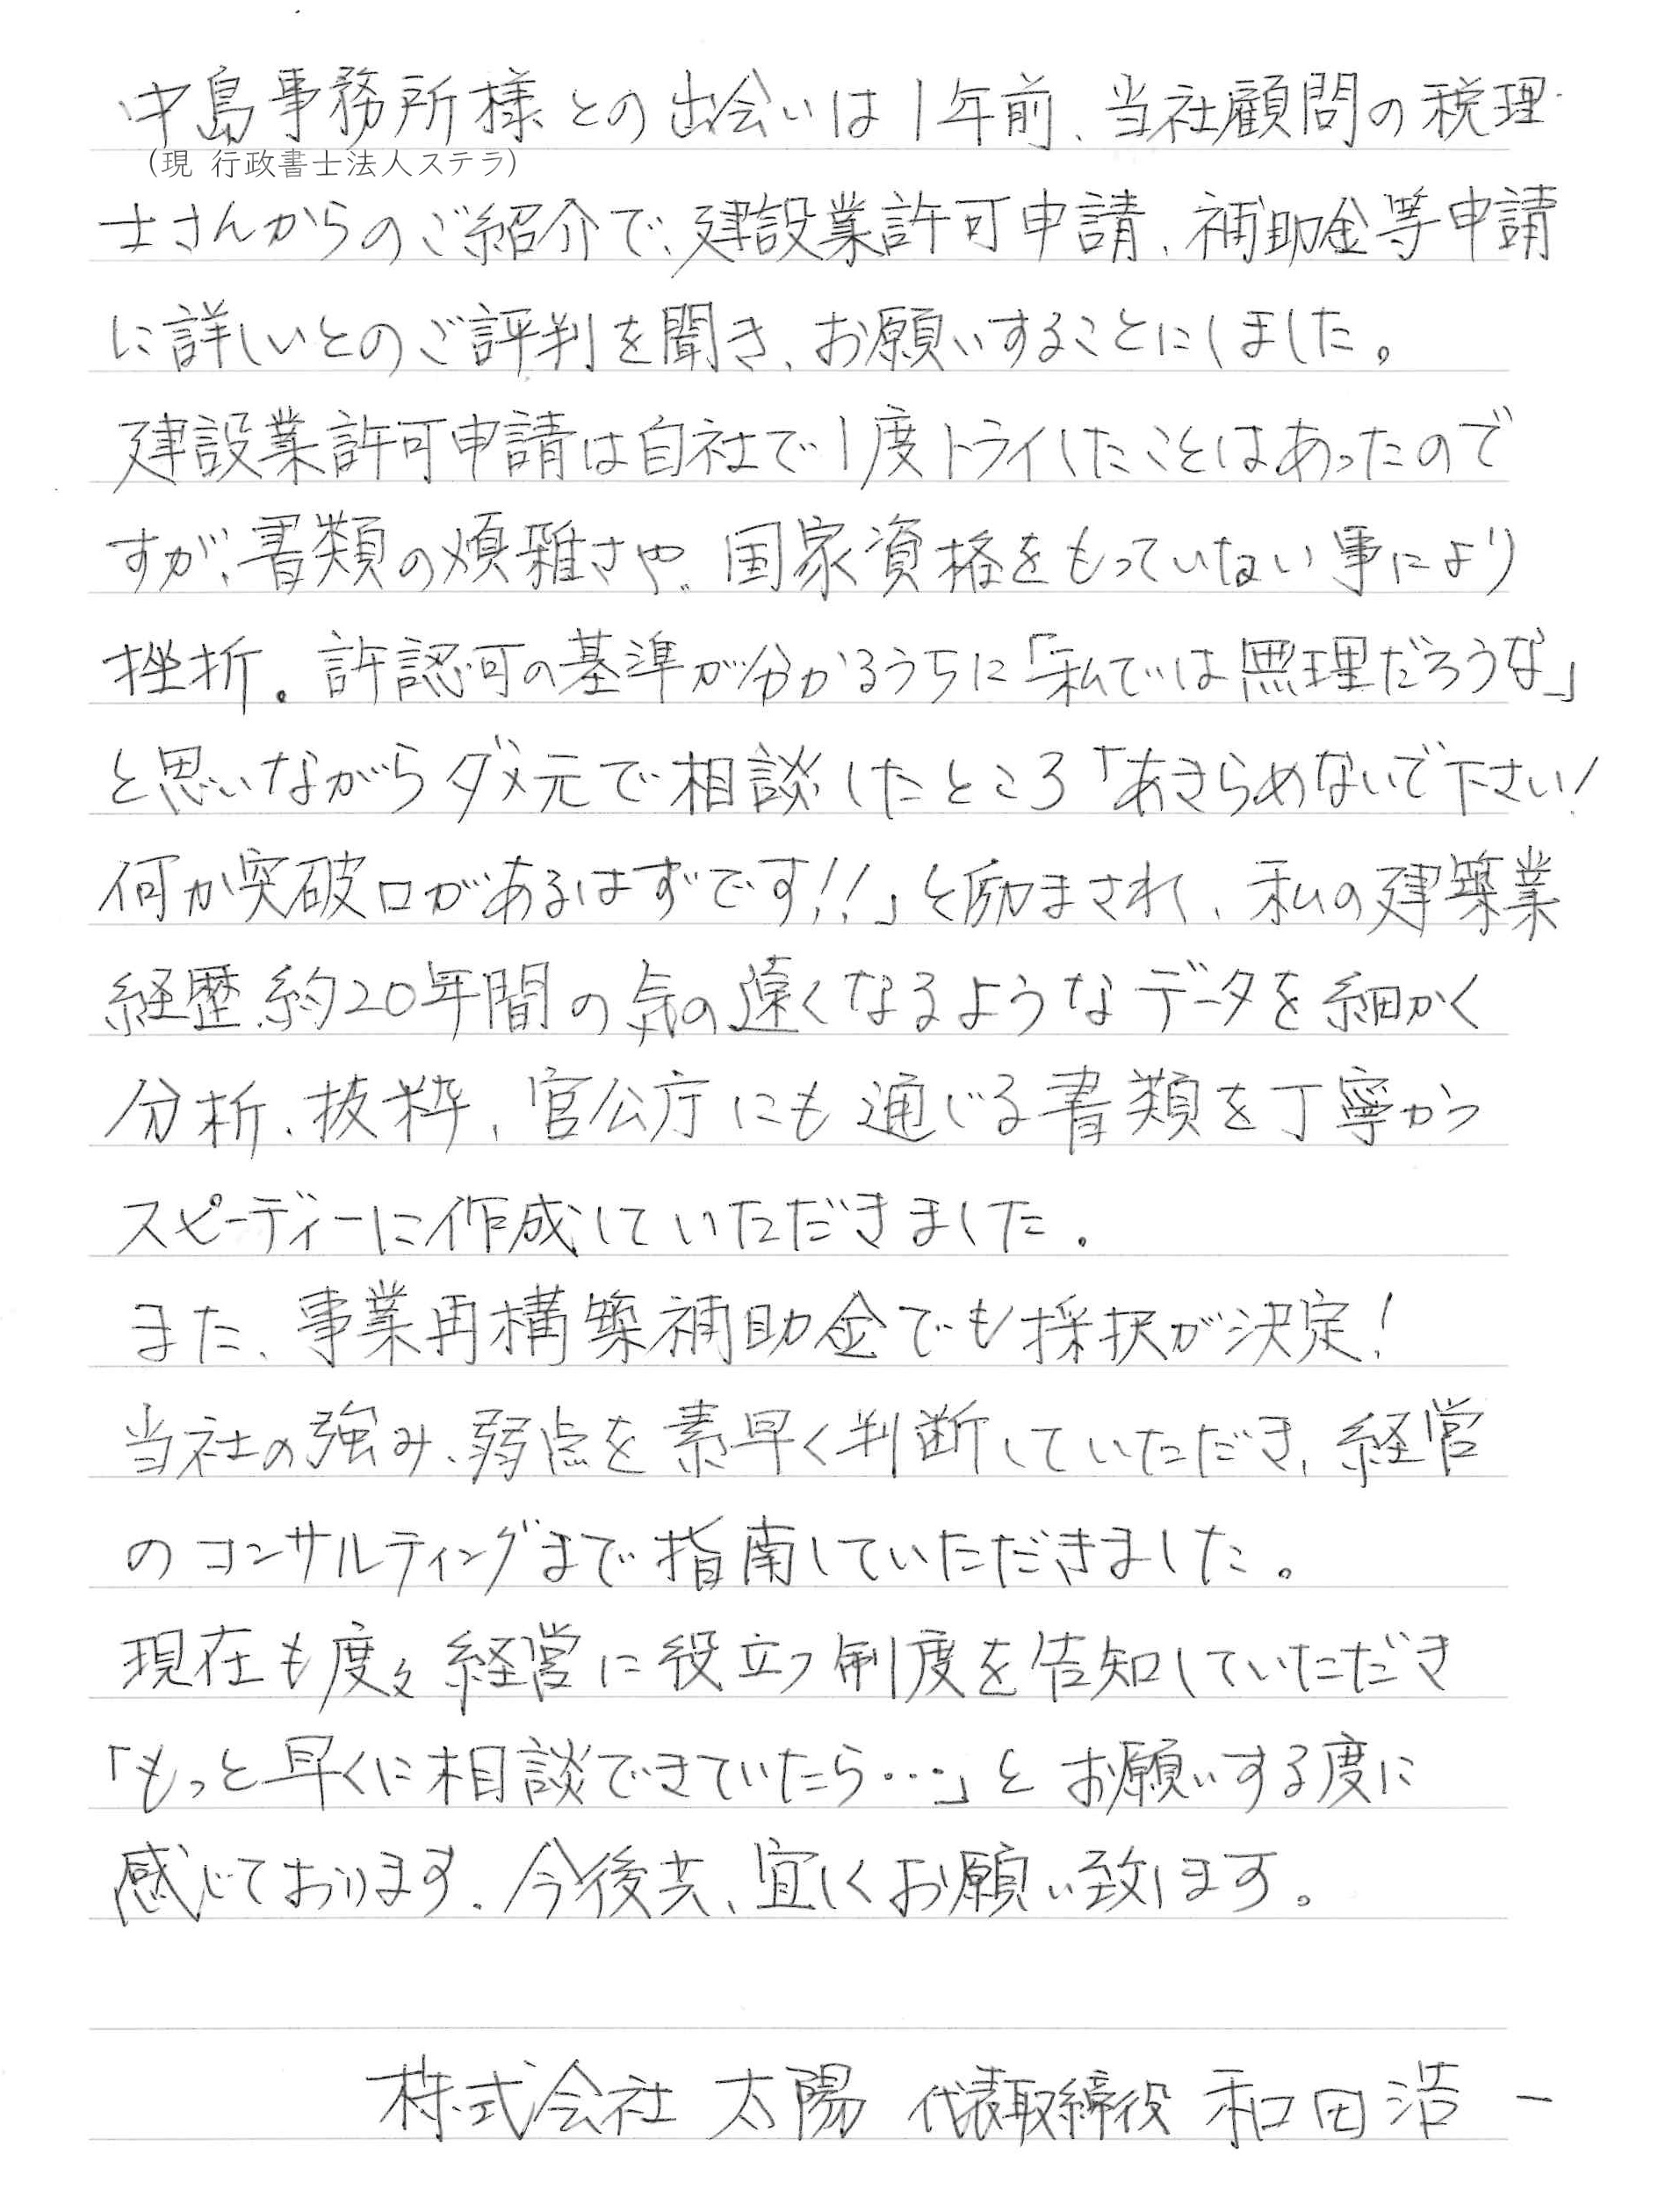 和田様からのお手紙